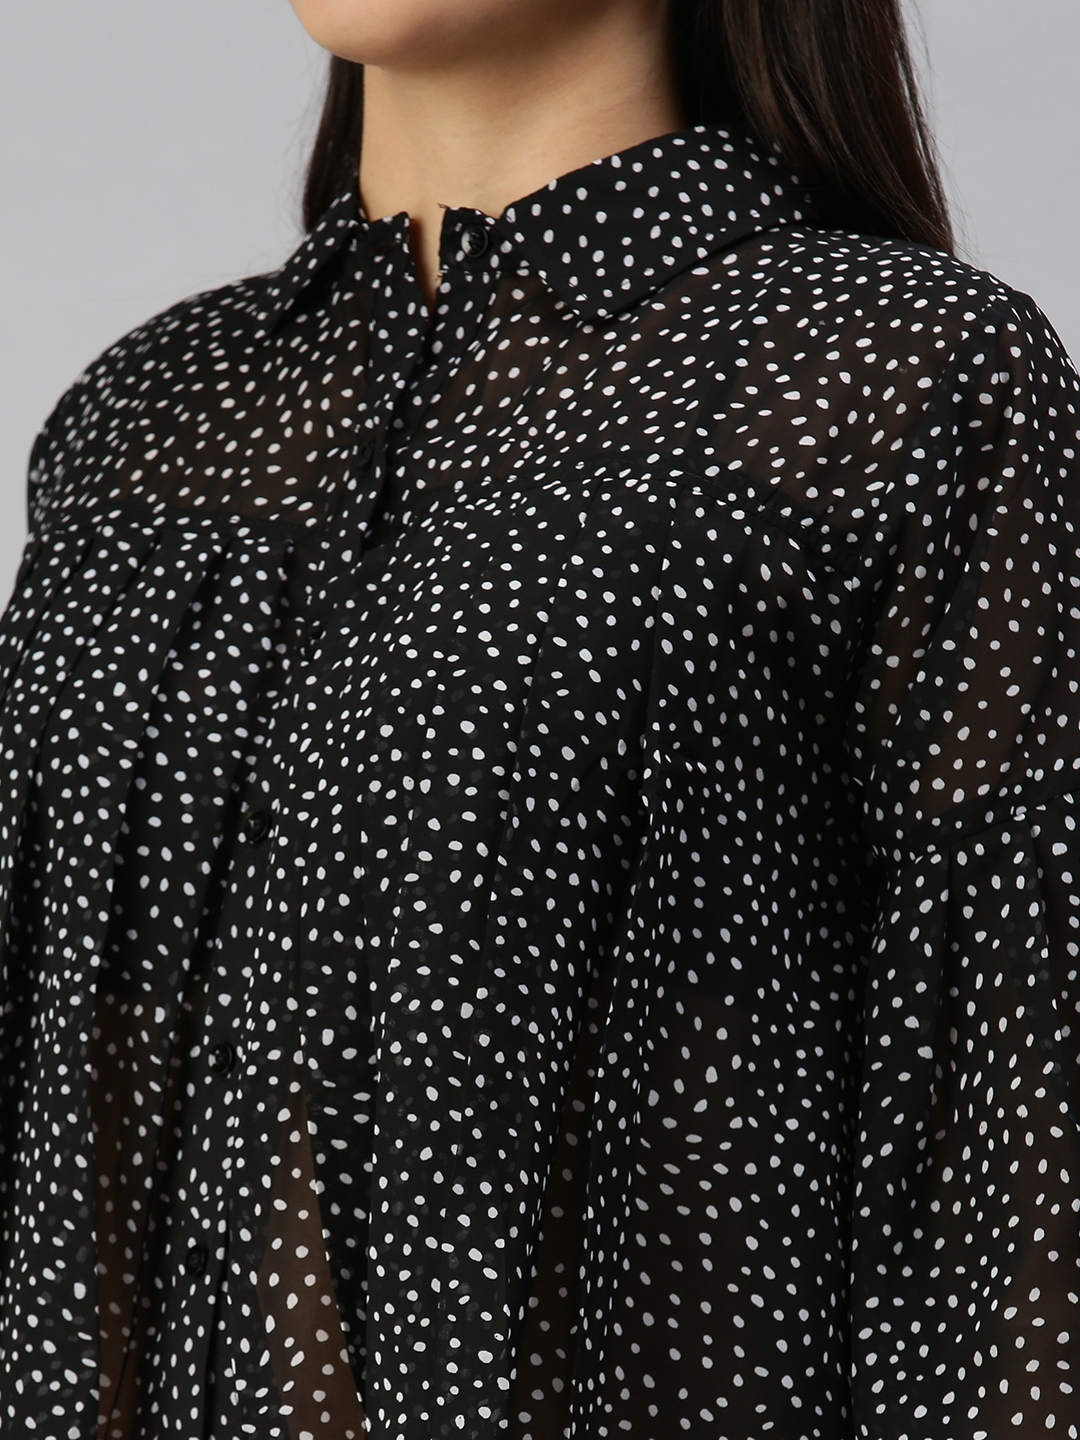 Showoff | SHOWOFF Women's Three-Quarter Sleeves Shirt Collar Black Polka Dots Top 5